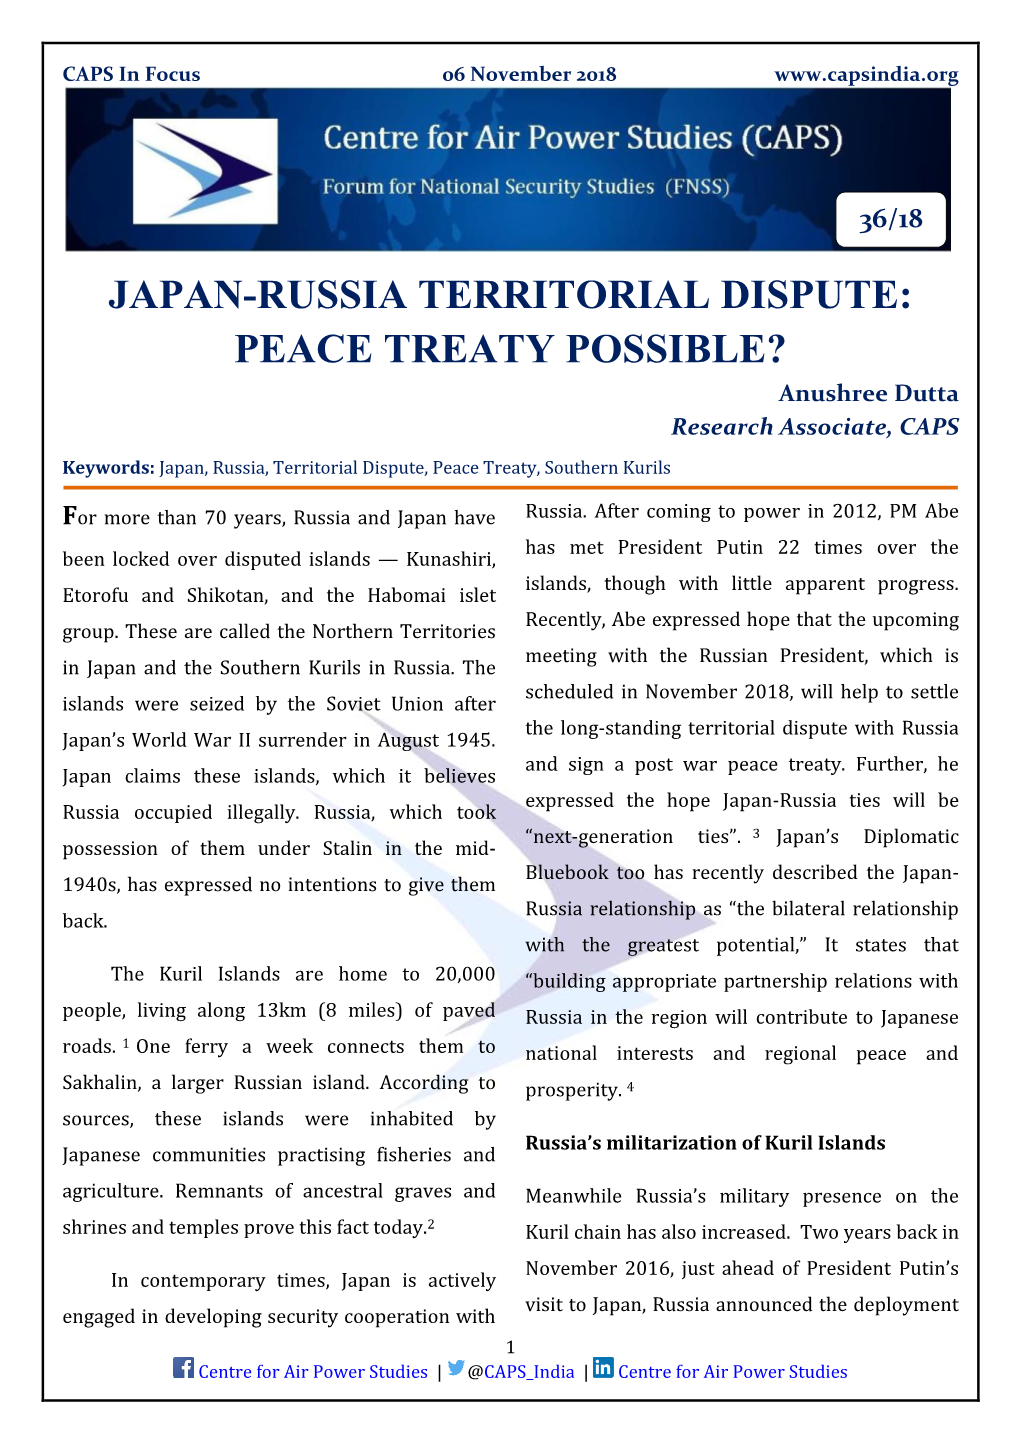 JAPAN-RUSSIA TERRITORIAL DISPUTE: PEACE TREATY POSSIBLE? Anushree Dutta Research Associate, CAPS